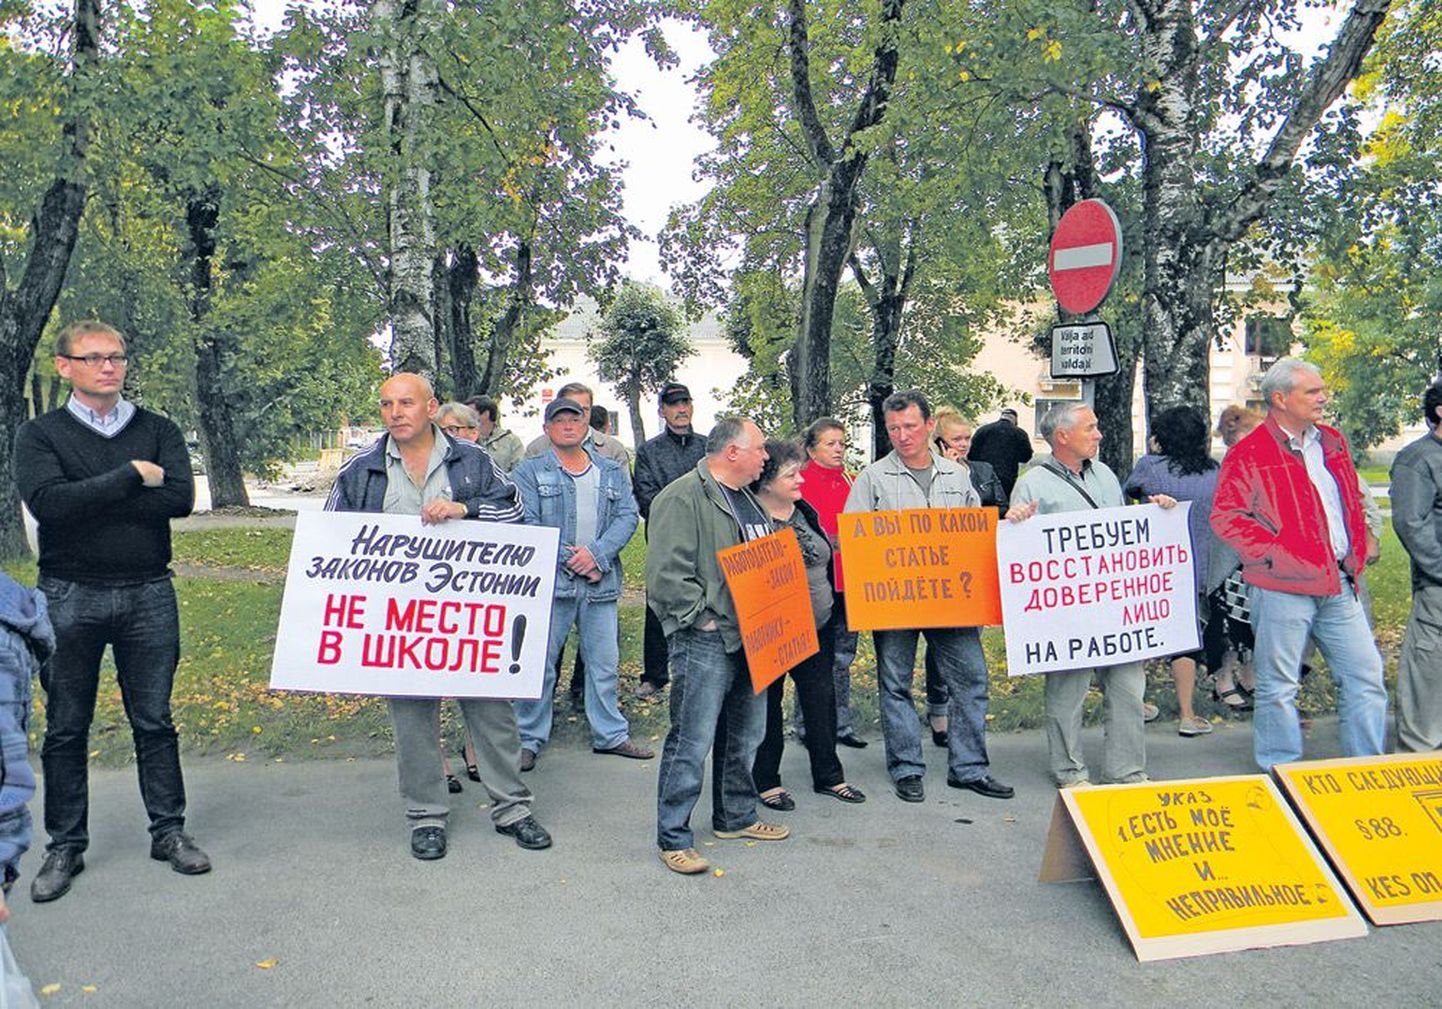 Поддержать пикетчиков приехал руководитель ЦСПЭ Пеэп Петерсон (крайний слева), по словам которого, профсоюзы этой акцией добиваются соблюдения эстонских законов.